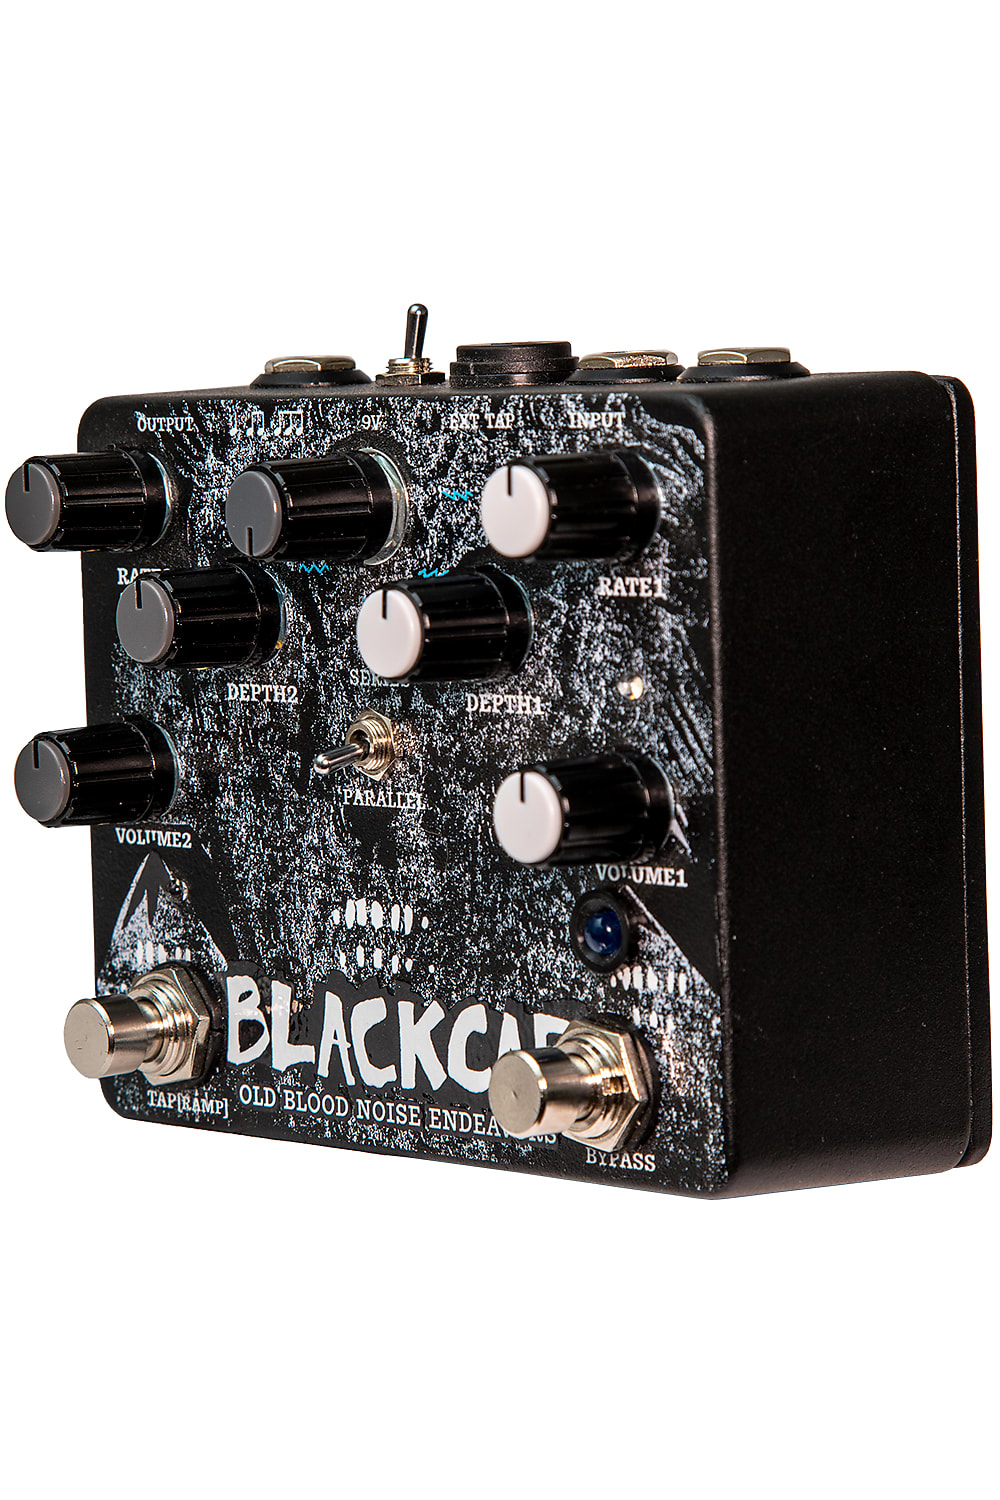 Old Blood Noise Endeavors Blackcap Harmonic Tremolo Effects Pedal